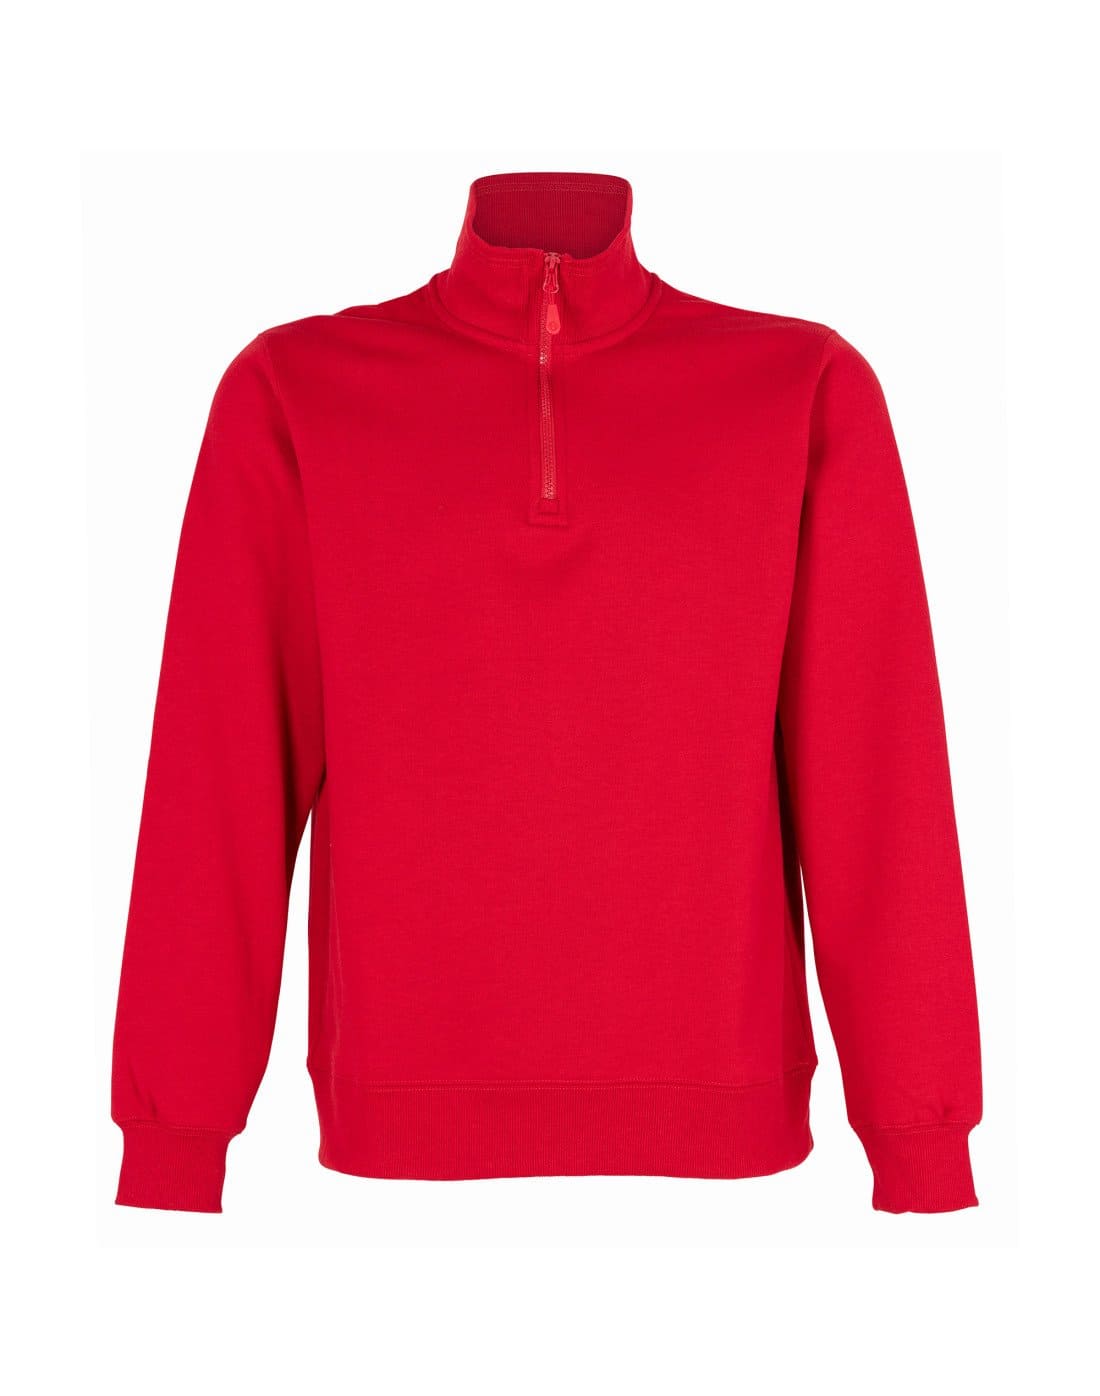 Polerón rojo medio cierre de TEAMGRAFF, confortable y estiloso, perfecto para uso diario y actividades deportivas